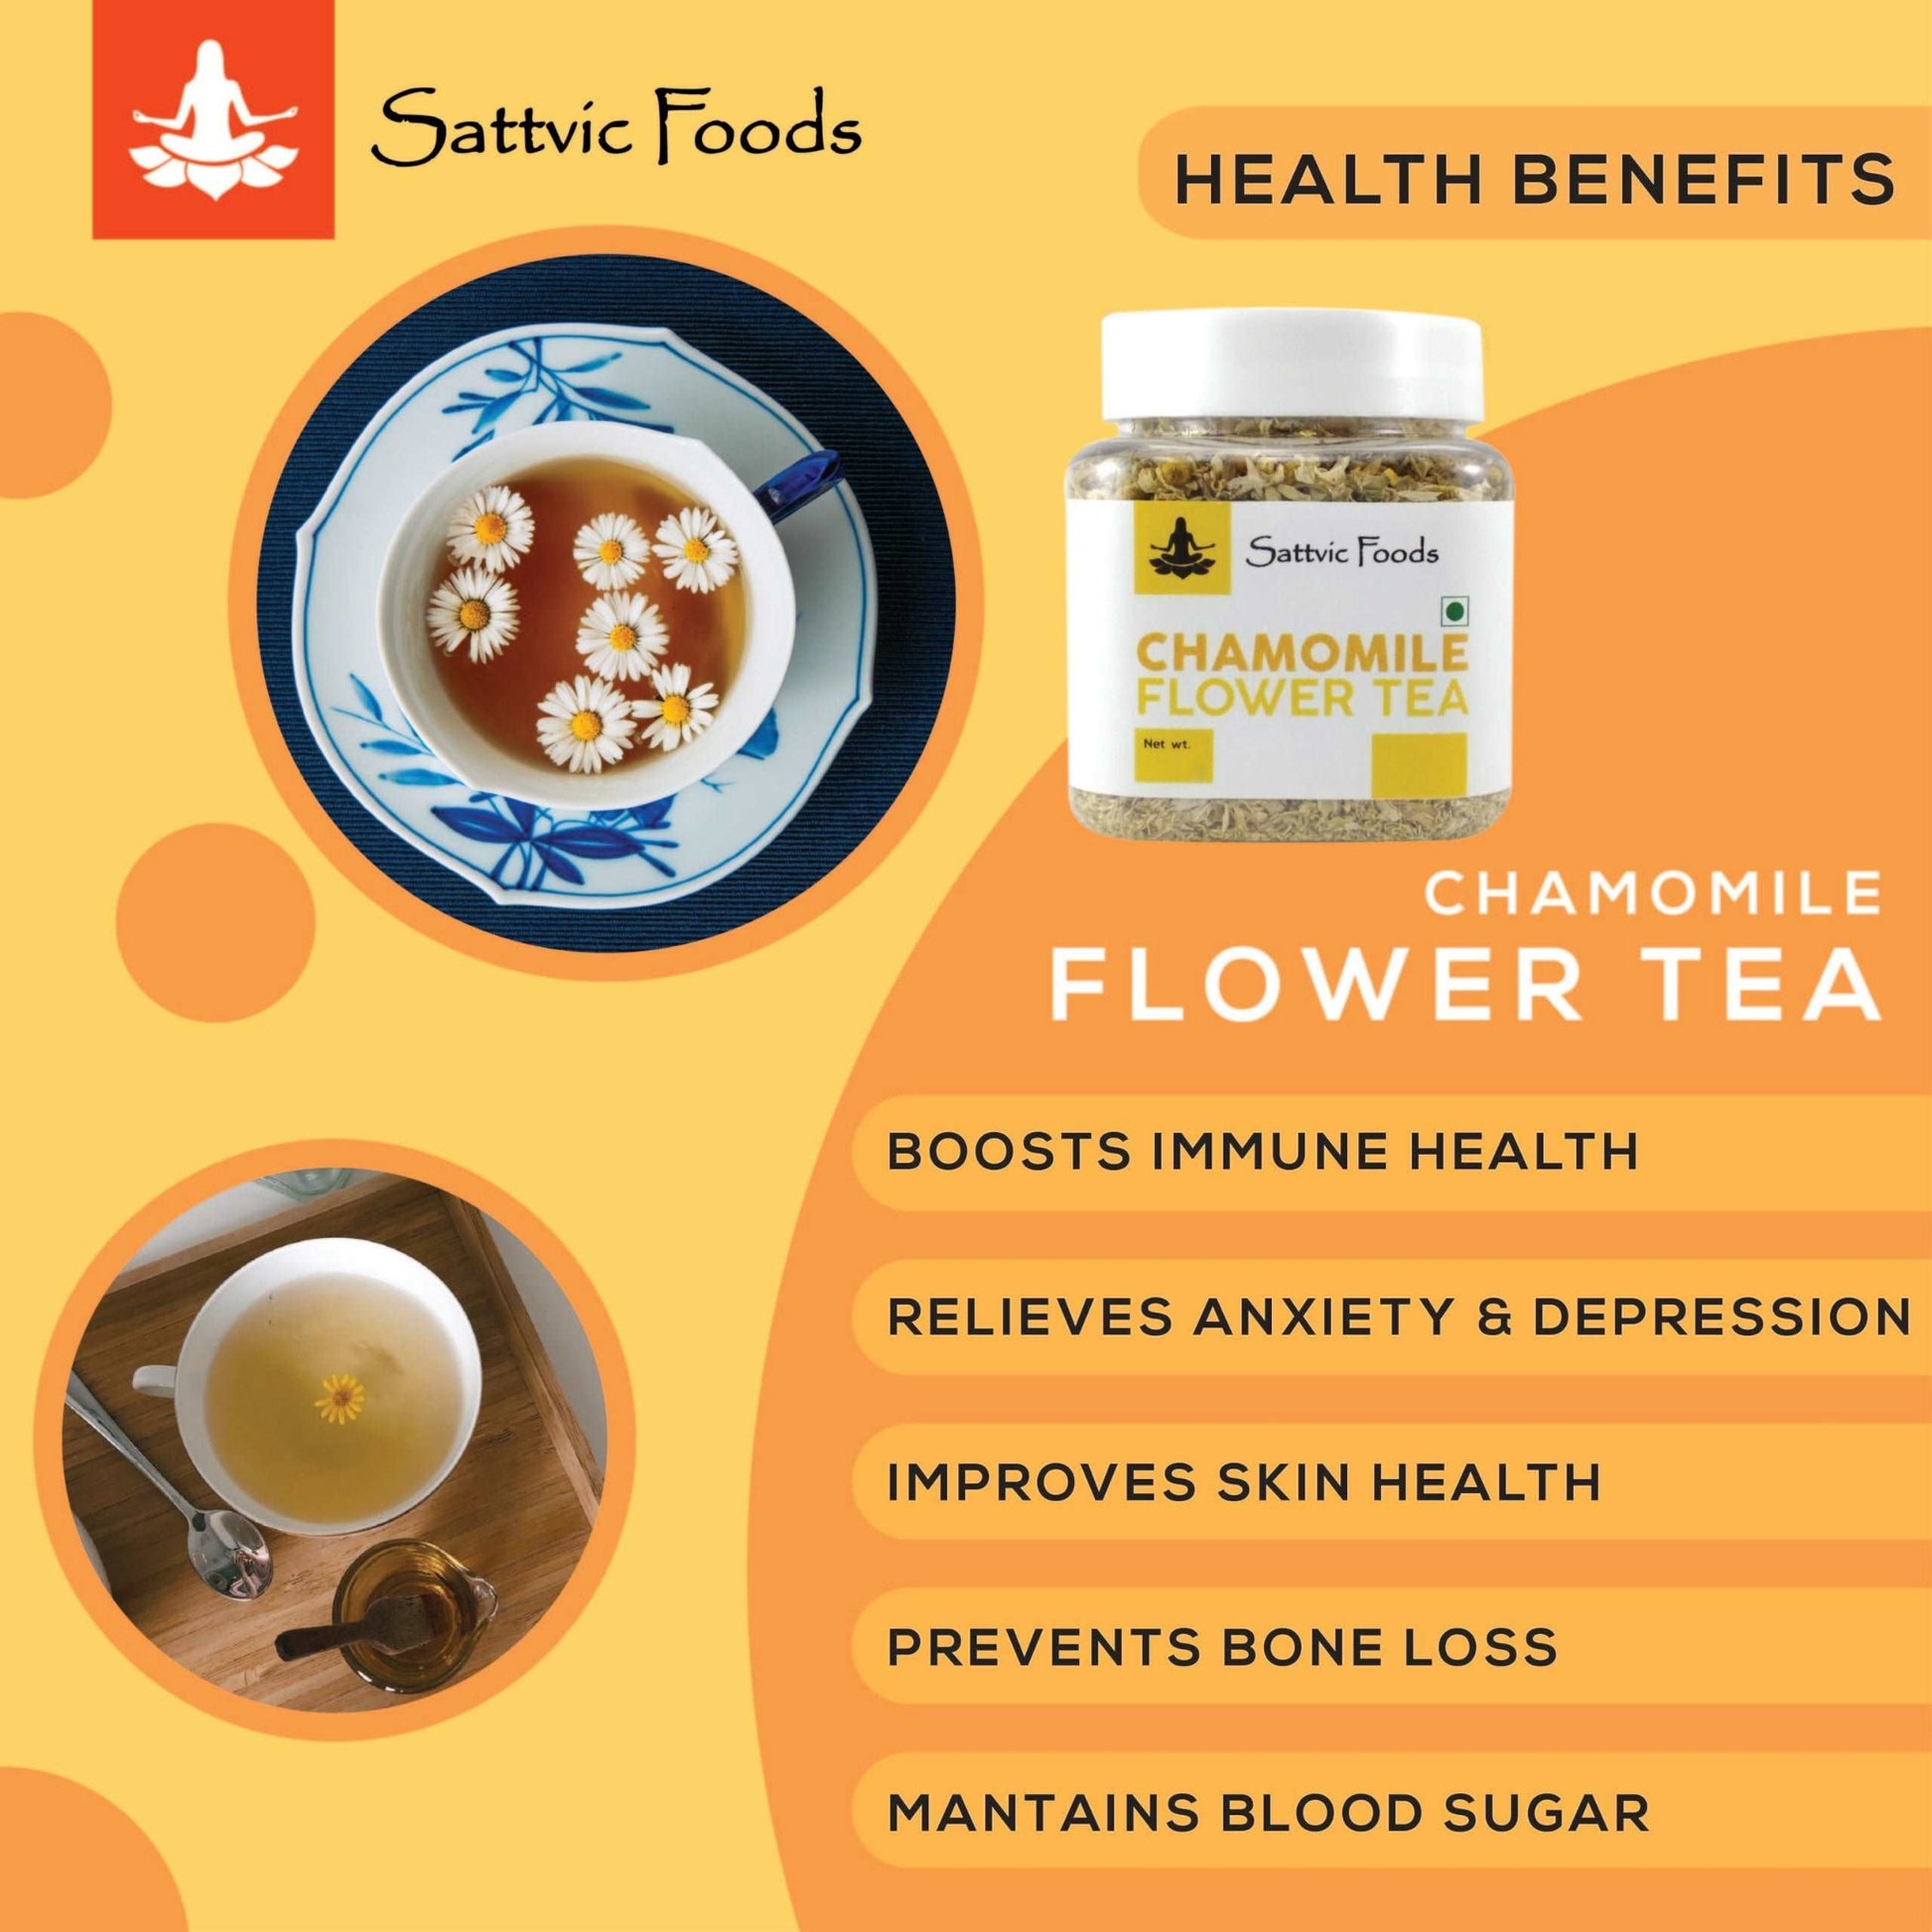 Chamomile Flowers - Herbal Tea (Kashmir) Sattvic Foods